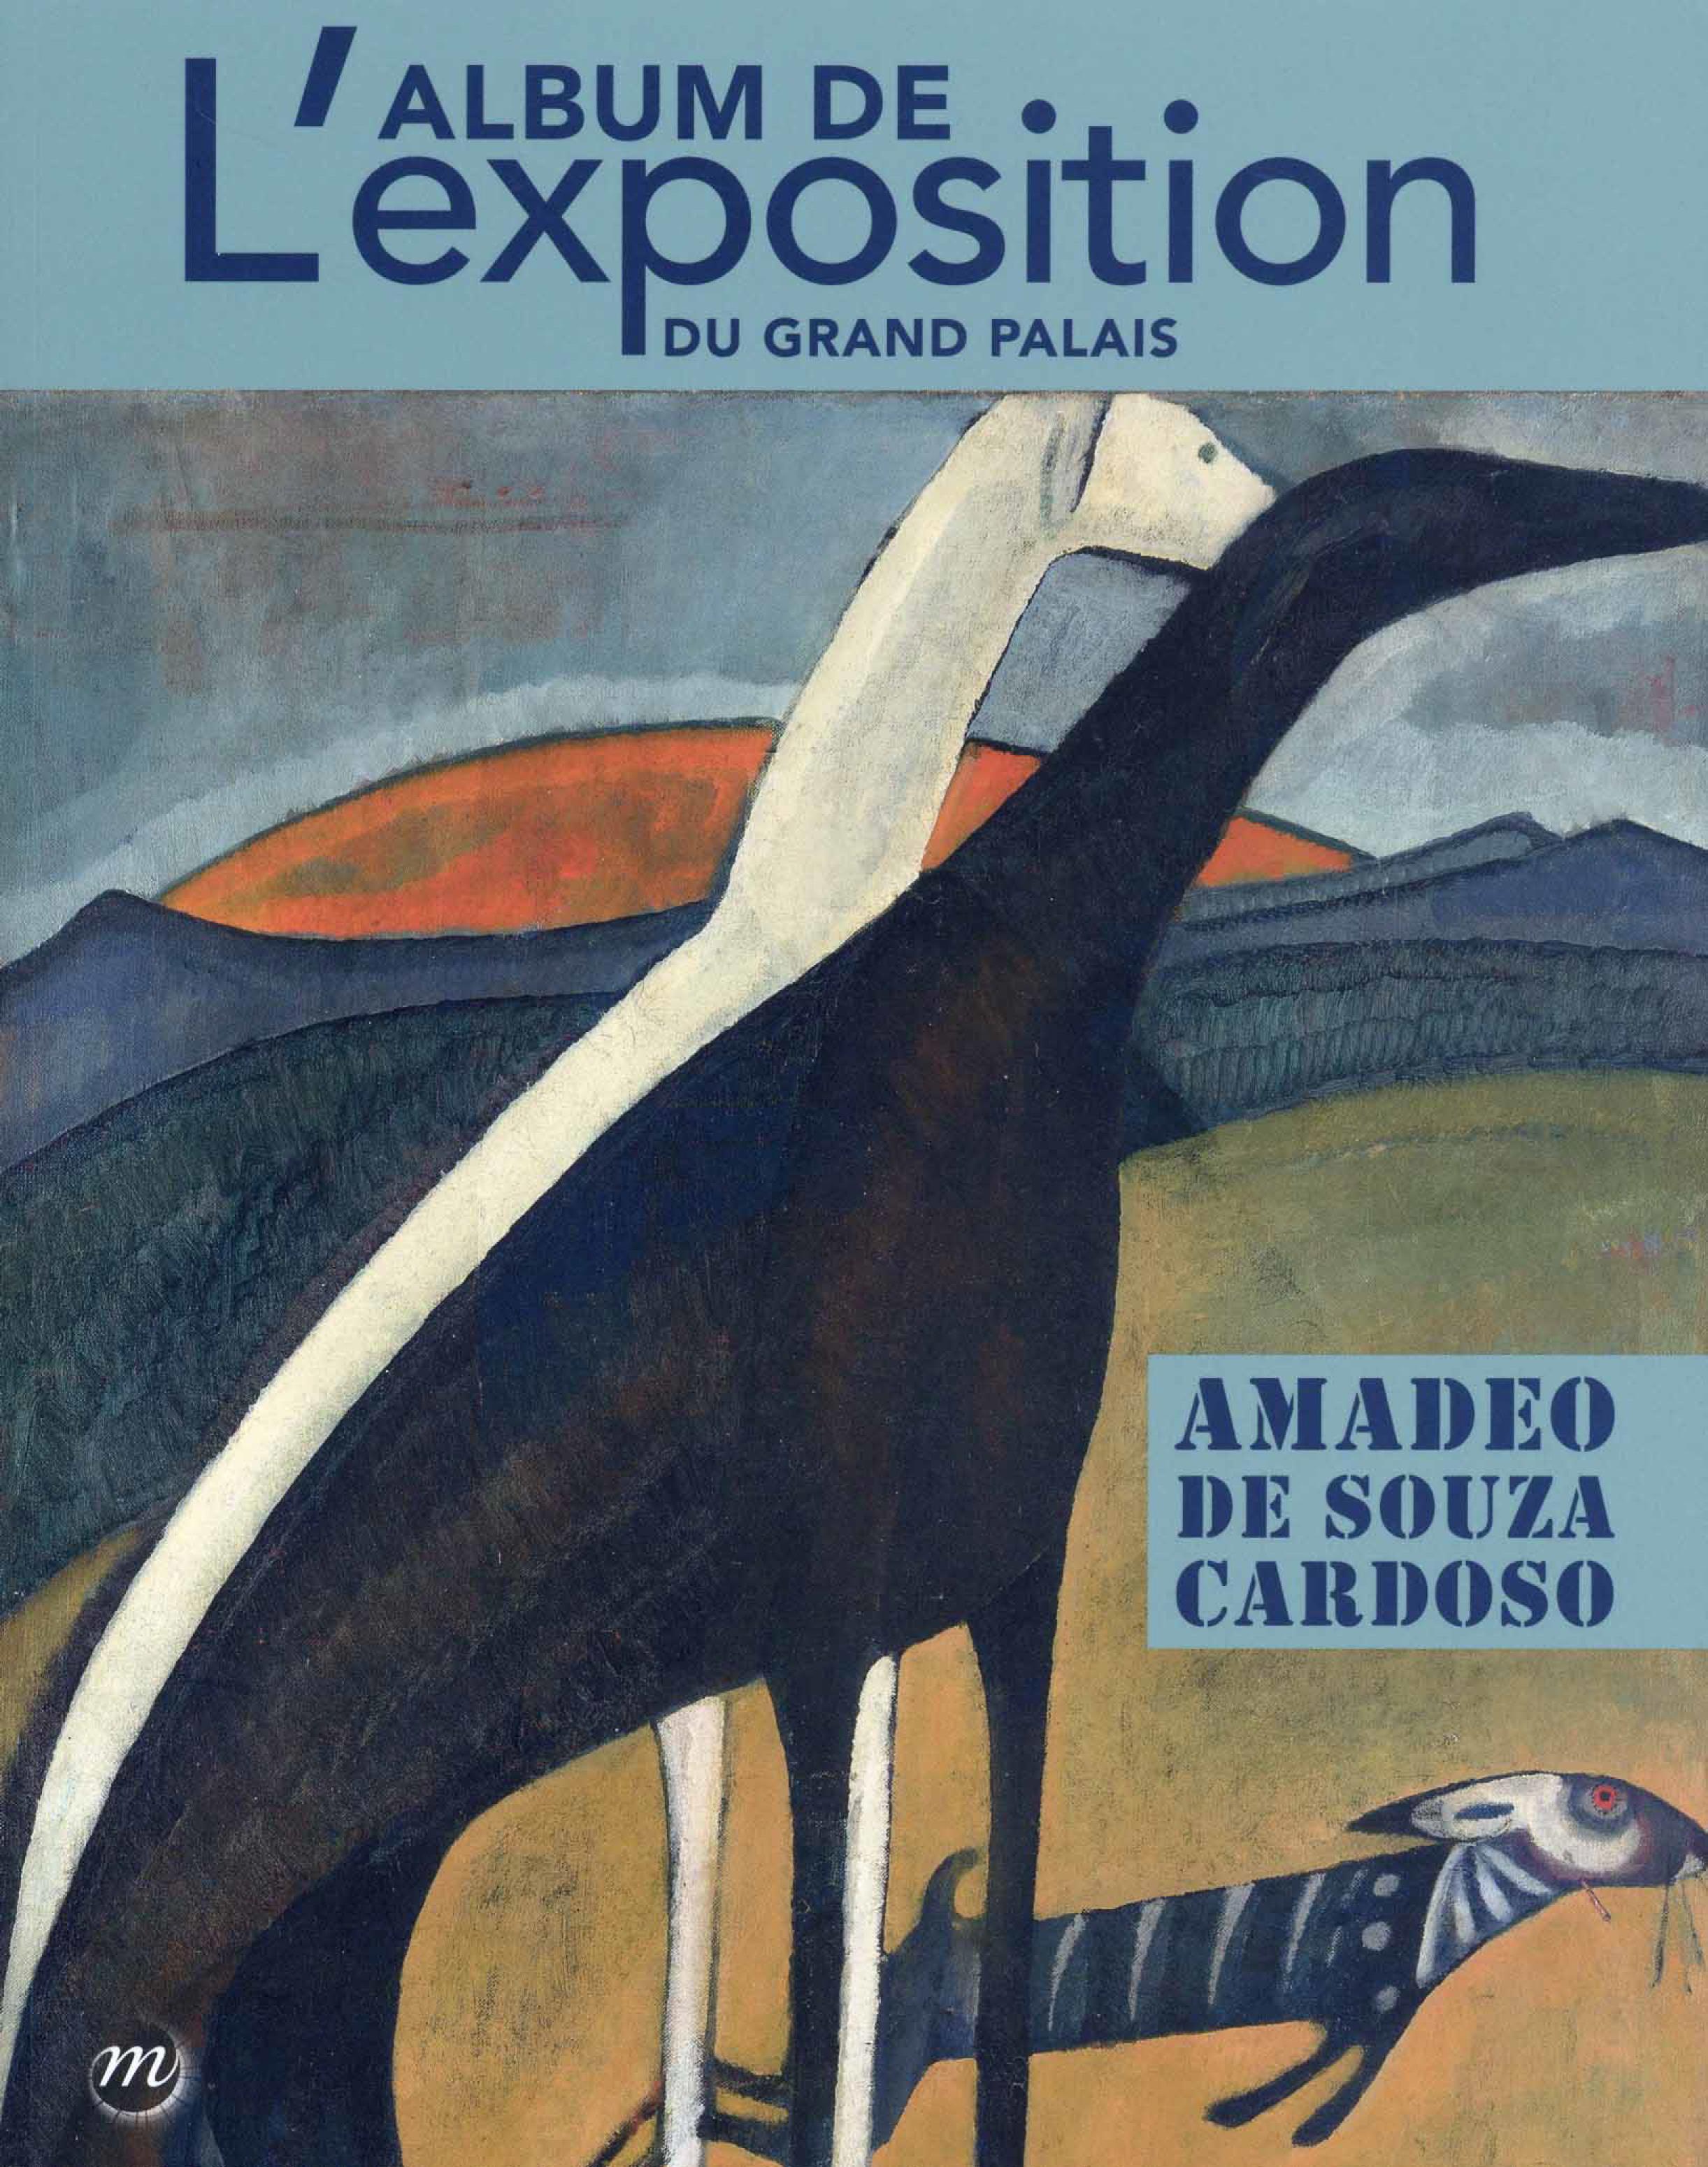 L'Album de l'Exposition du Grand Palais. Amadeo de Souza Cardoso